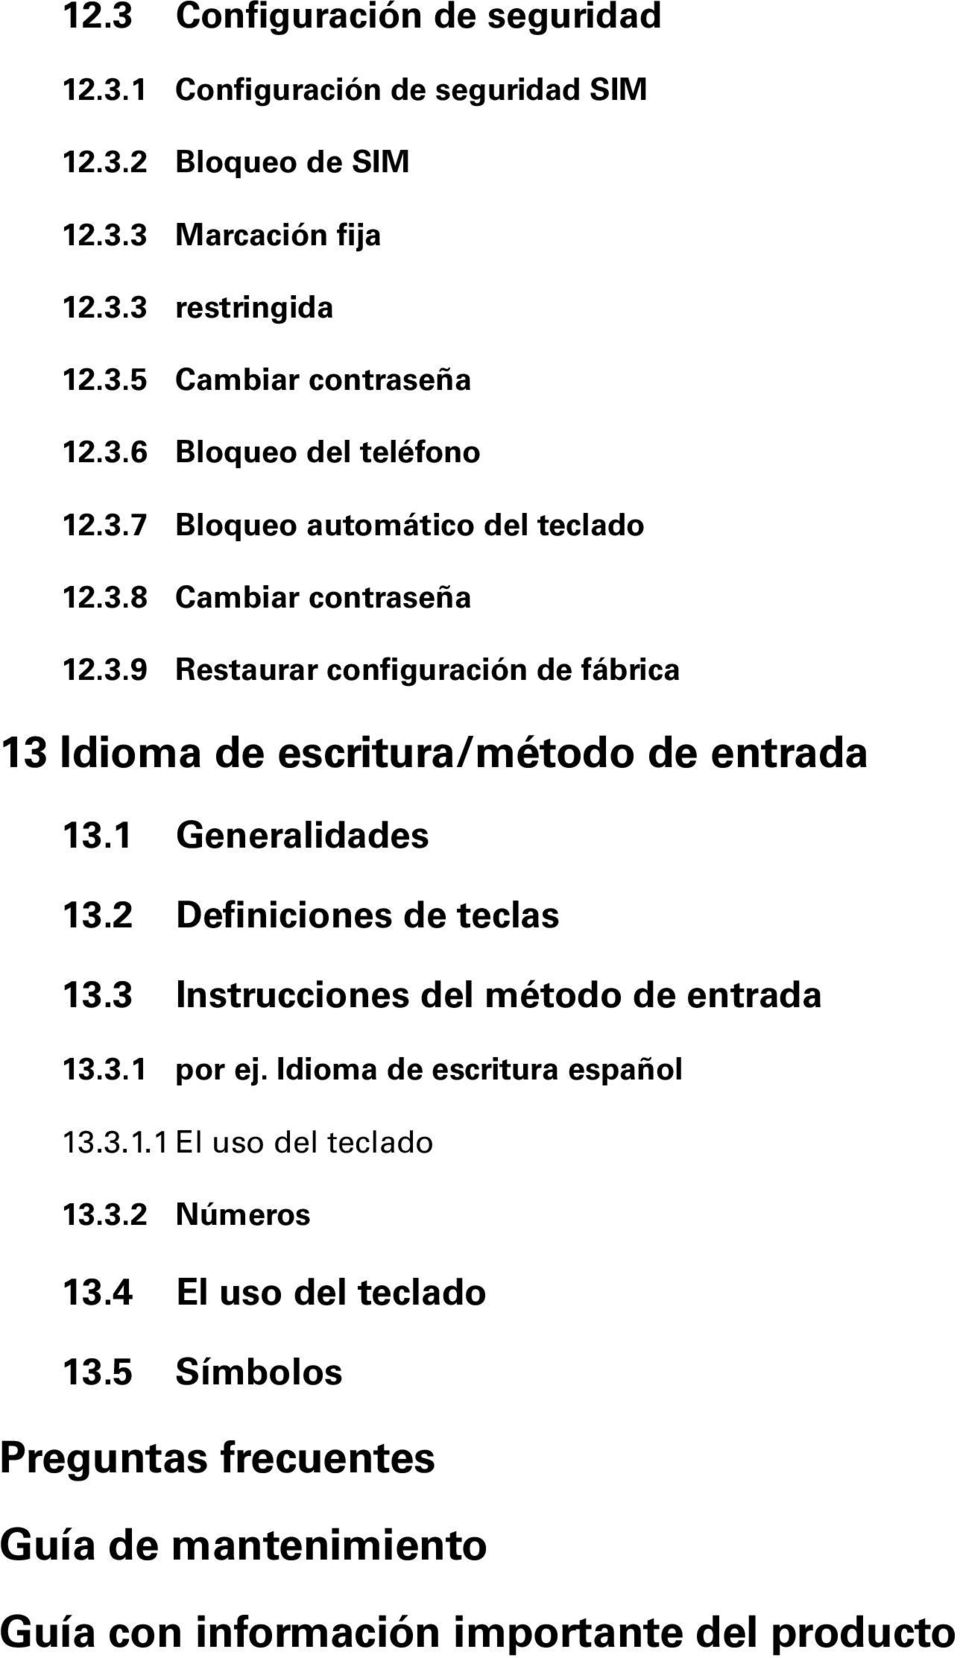 1 Generalidades 13.2 Definiciones de teclas 13.3 Instrucciones del método de entrada 13.3.1 por ej. Idioma de escritura español 13.3.1.1 El uso del teclado 13.